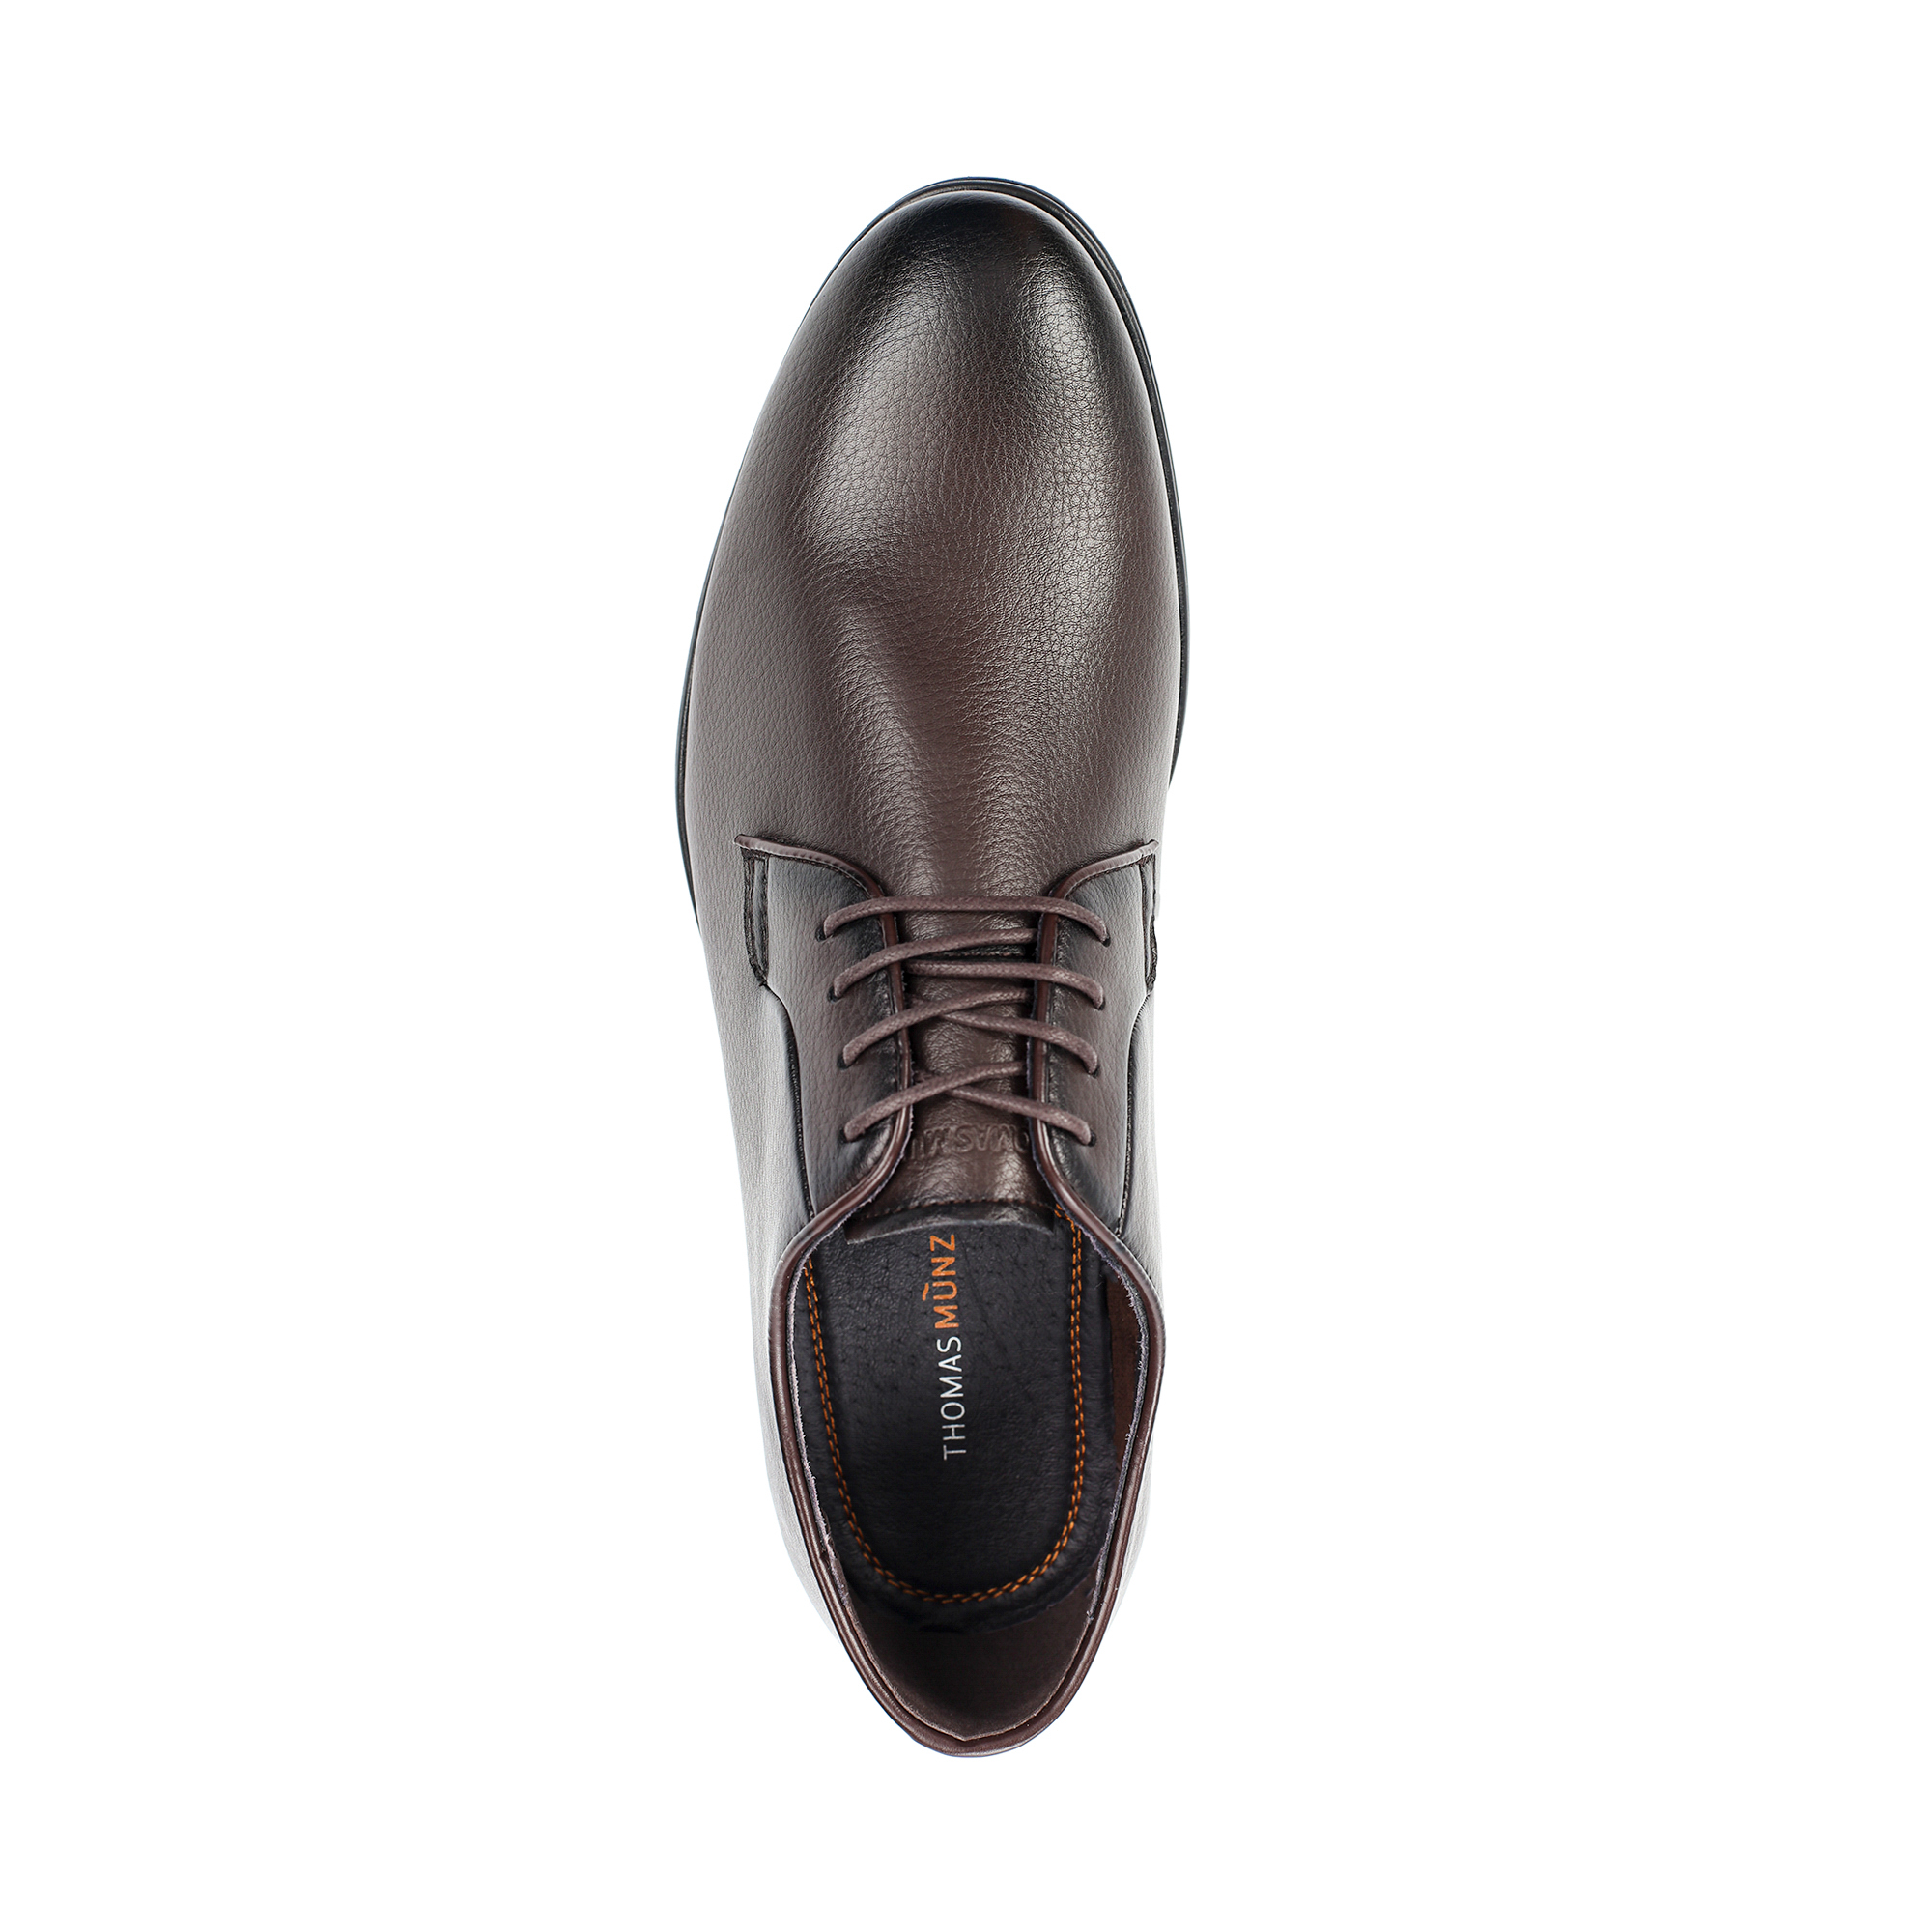 Туфли/полуботинки Thomas Munz 073-747A-2109, цвет темно-коричневый, размер 42 - фото 5